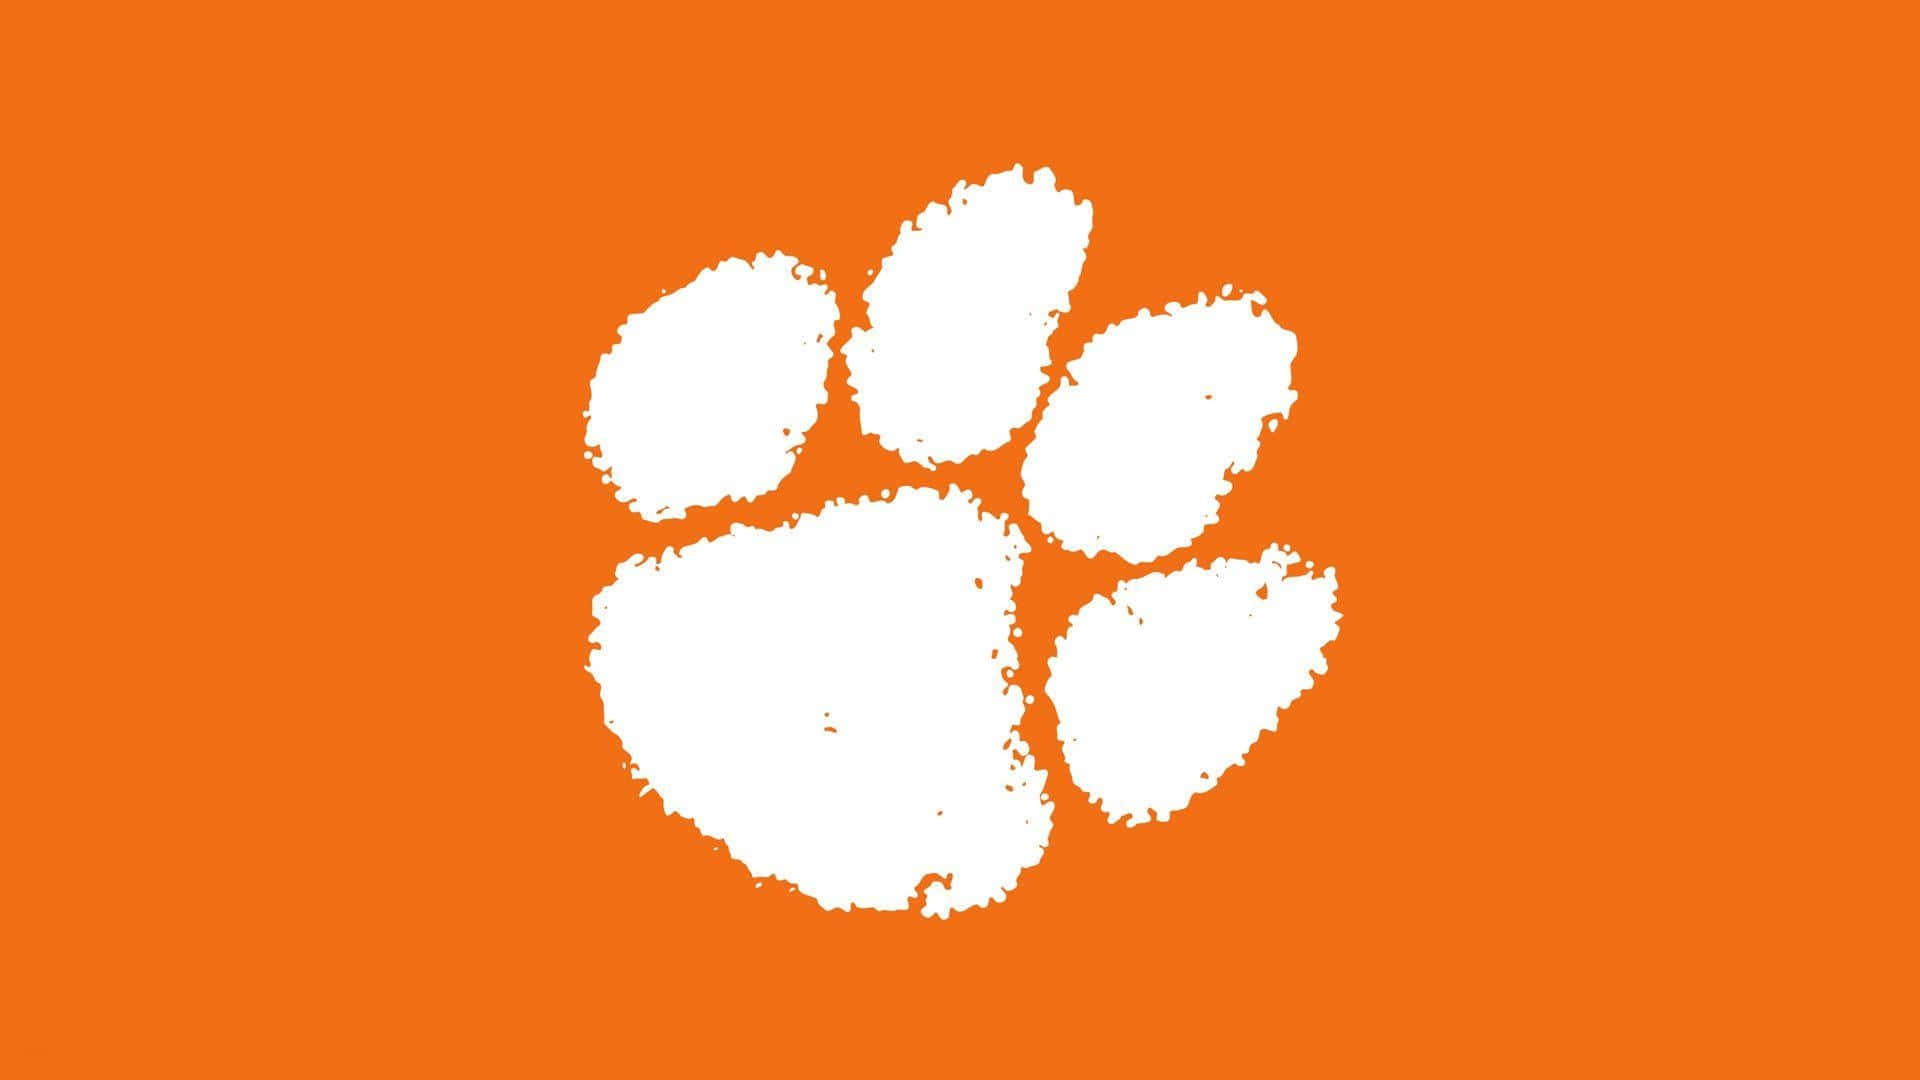 Logotipodel Equipo De Fútbol De Los Clemson Tigers En Blanco. Fondo de pantalla